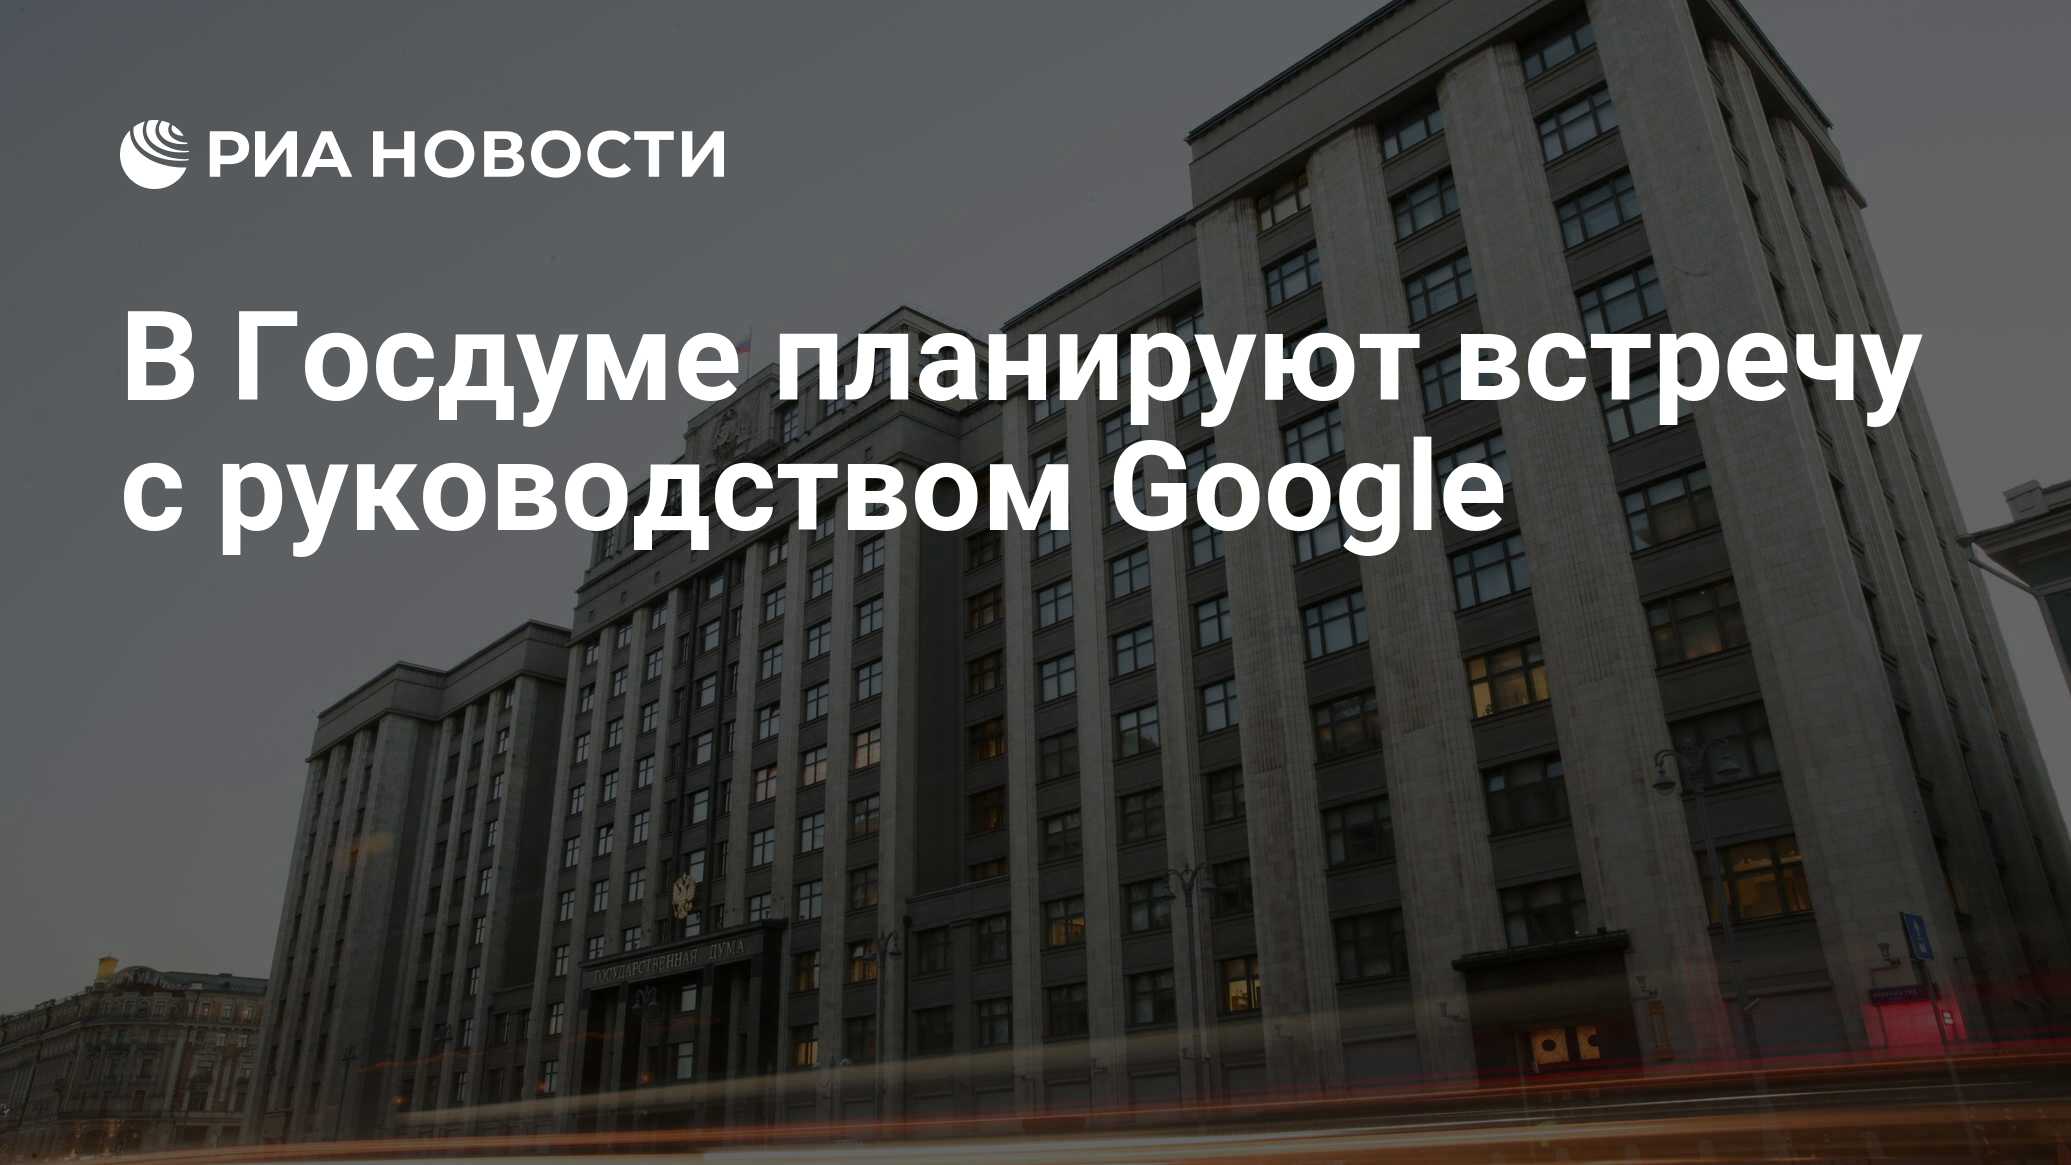 В Госдуме планируют встречу с руководством Google